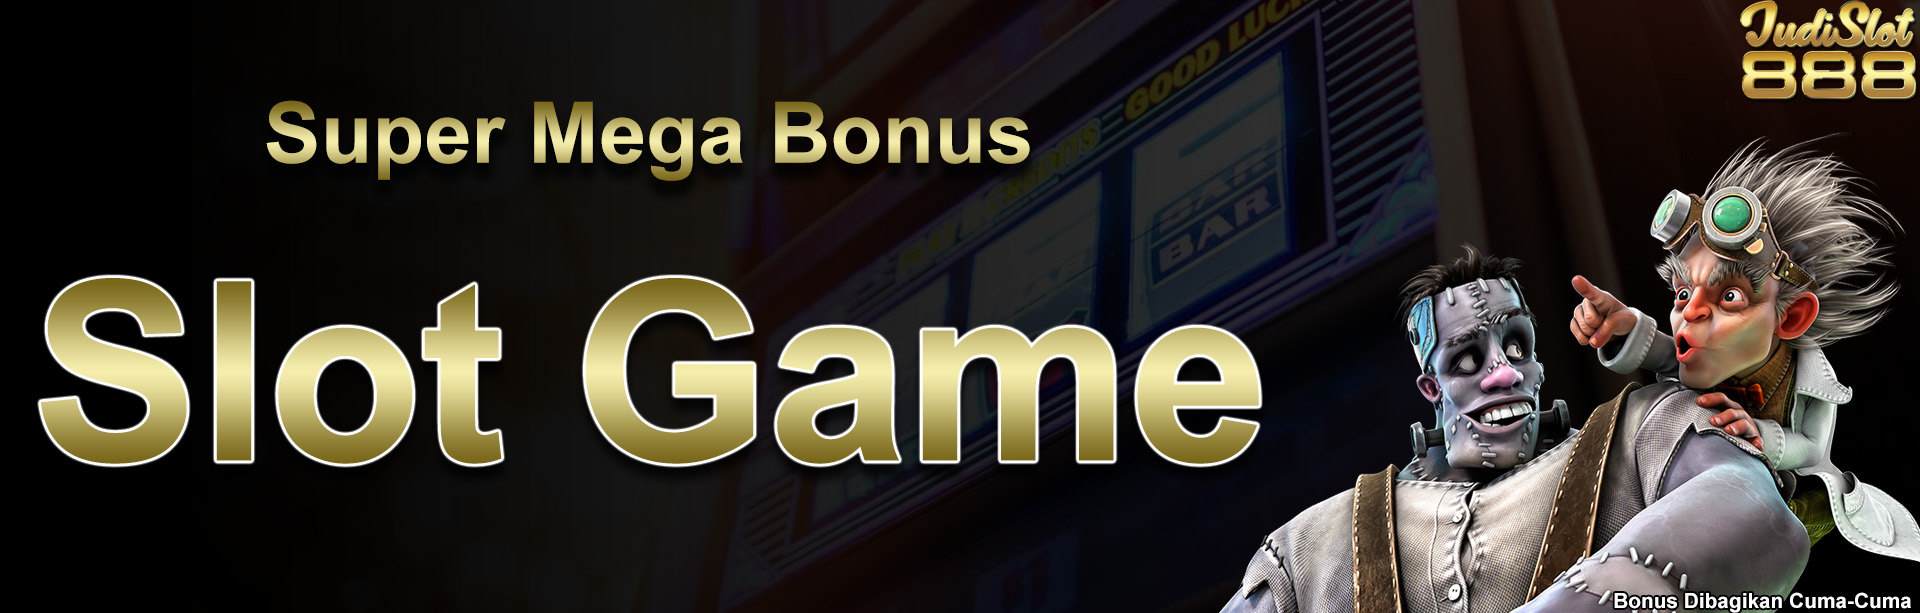 Super Mega Bonus Slot Game 888